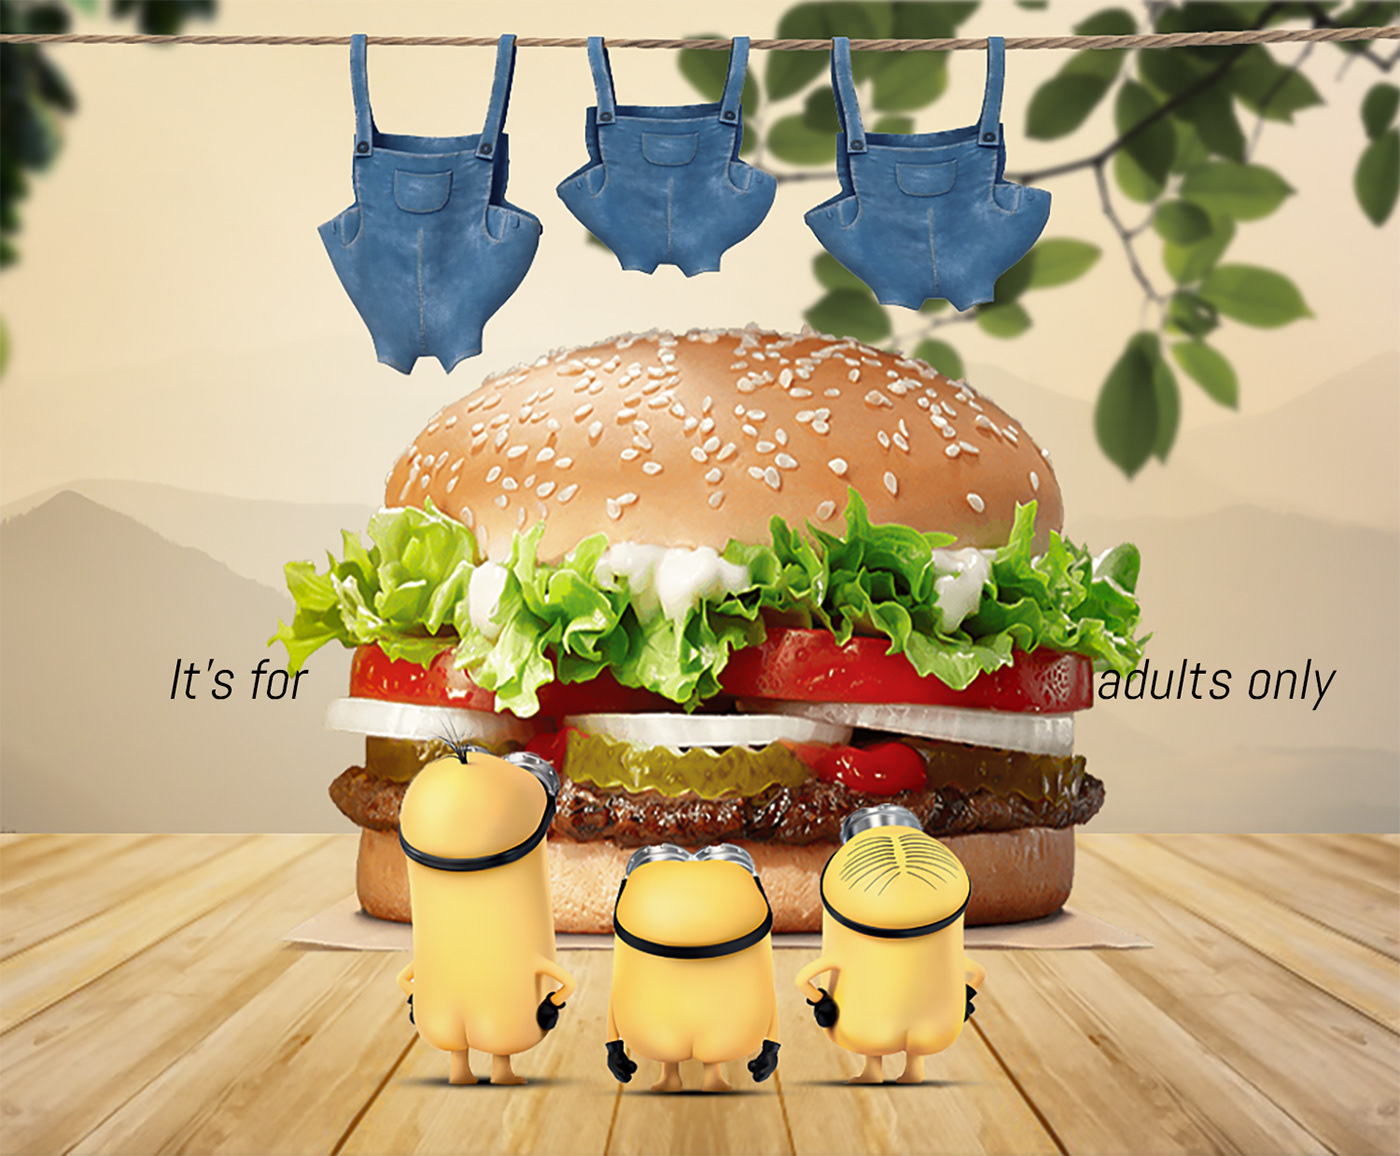 burger social social media media ad ads